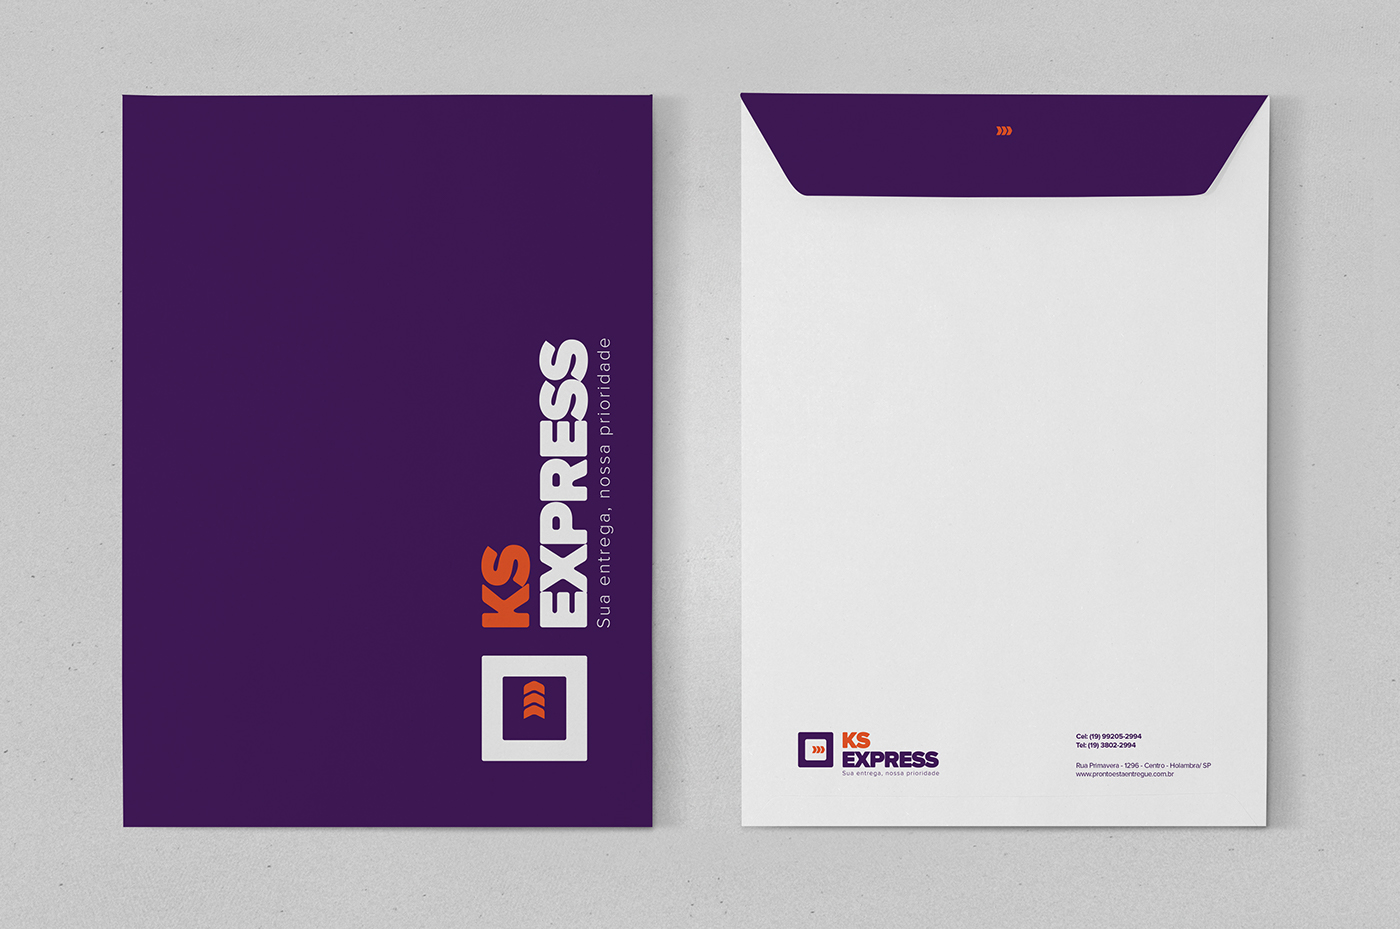 KS express logo papelaria cartão envelope uniforme identidade visual